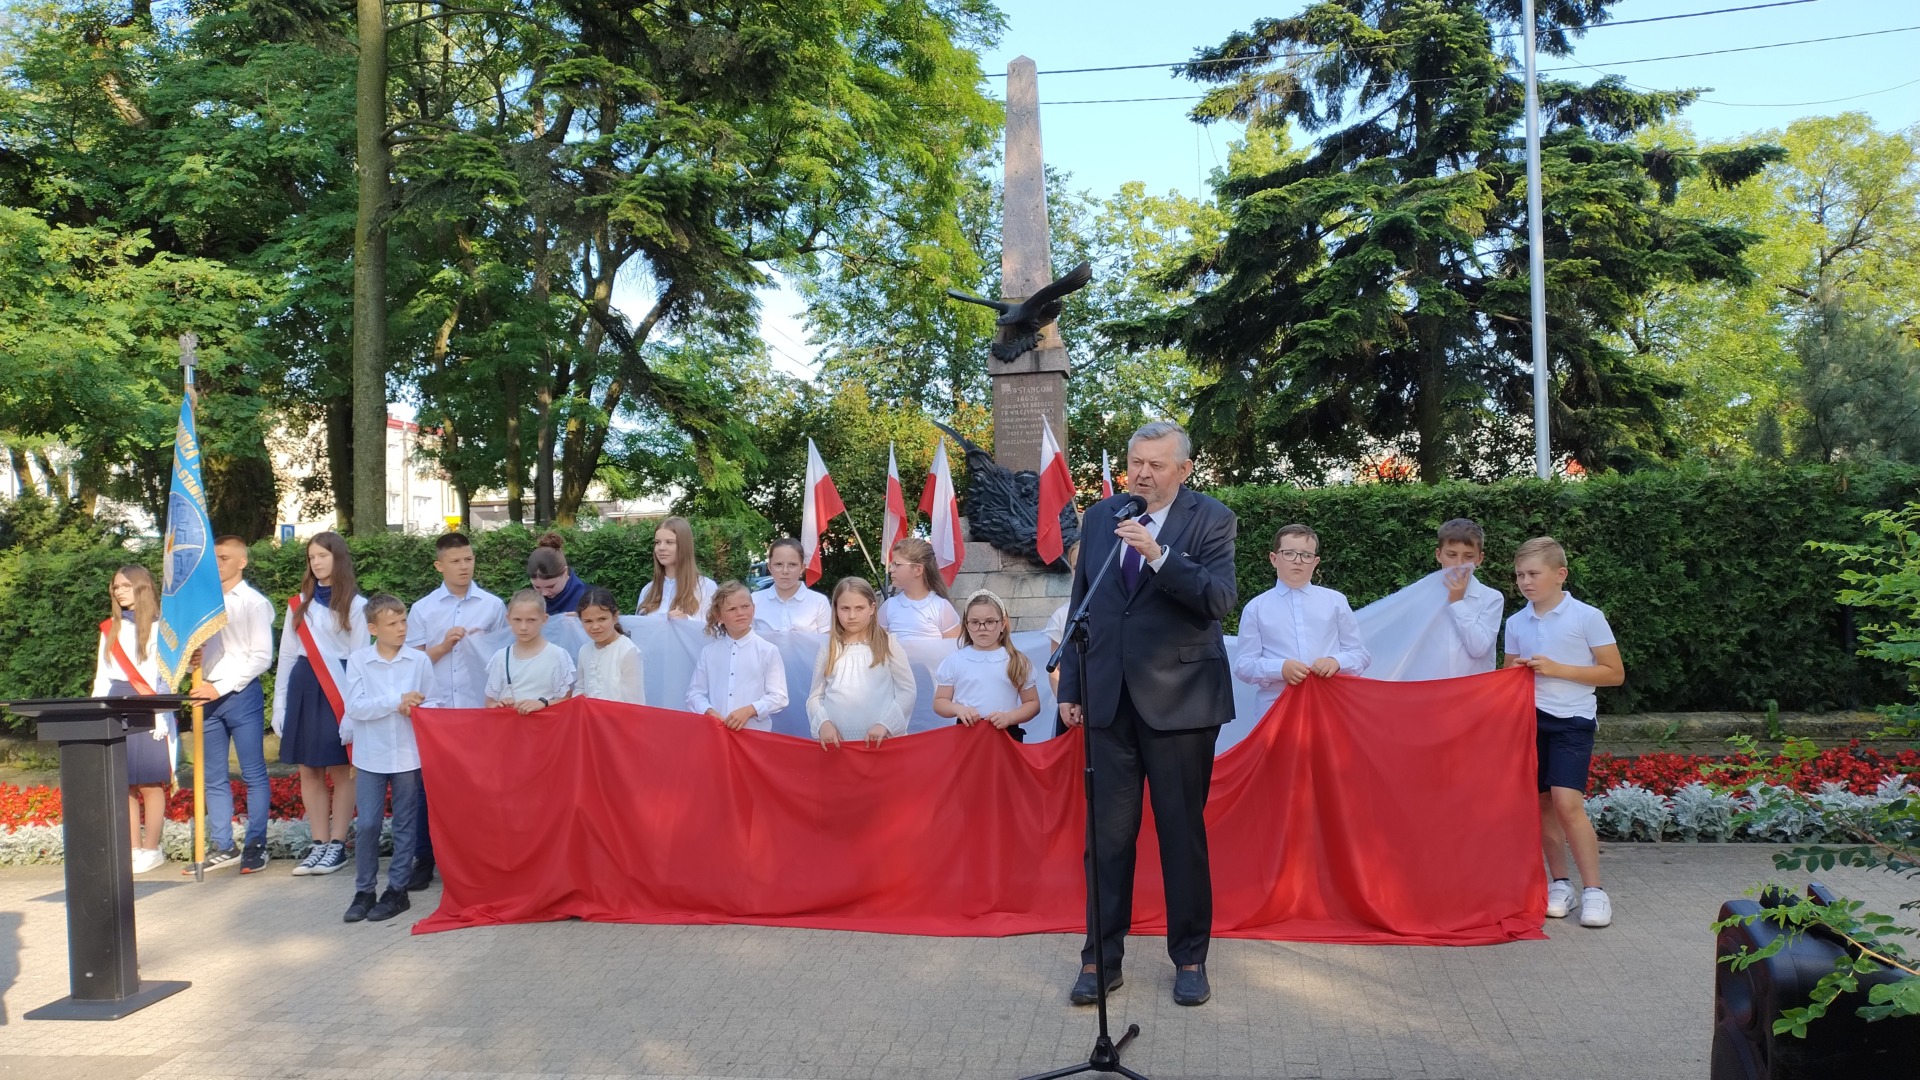 Na pierwszym planie Burmistrz Miasta, dalej dzieci z biało-czerwoną flagą, w tle pomnik ks. Brzóski